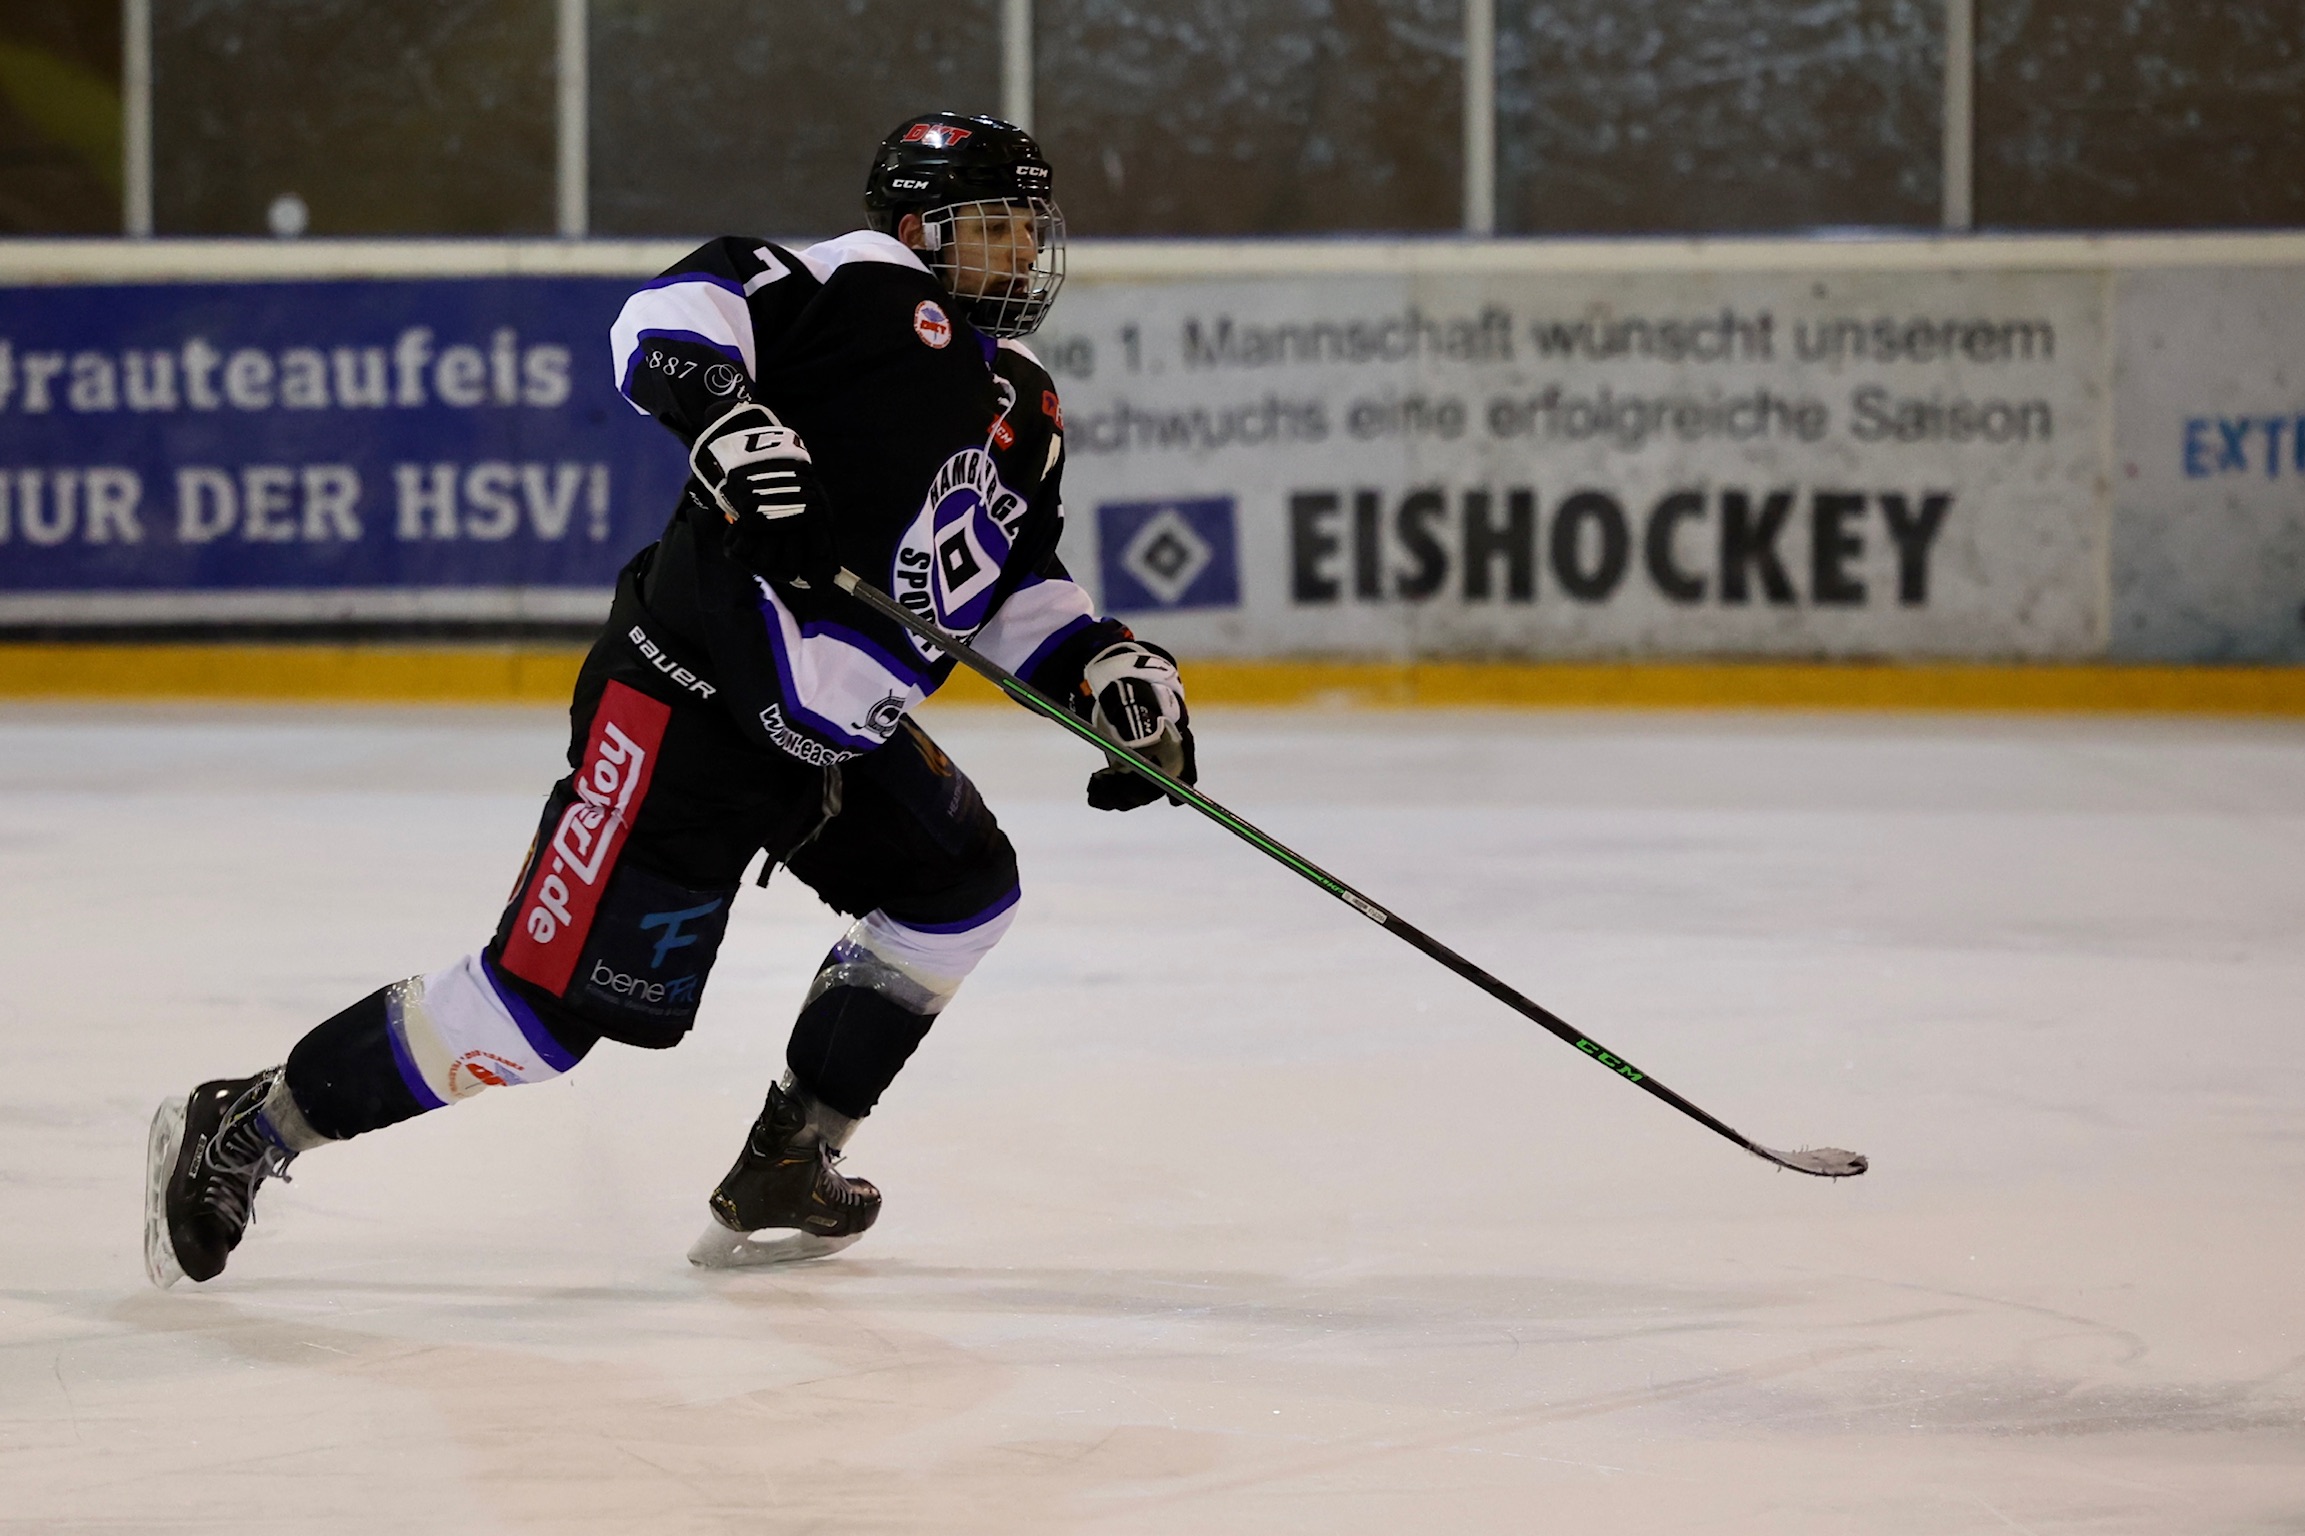 HSV Eishockey 1. Mannschaft - Rechtzeitig unters Messer Kapitän Marcel  Schlode unterzieht sich Schulter-OP. Zyniker behaupten sein Körper werde  nur noch durch Schrauben und ähnliche Hilfsmittel zusammengehalten und in  der Tat 